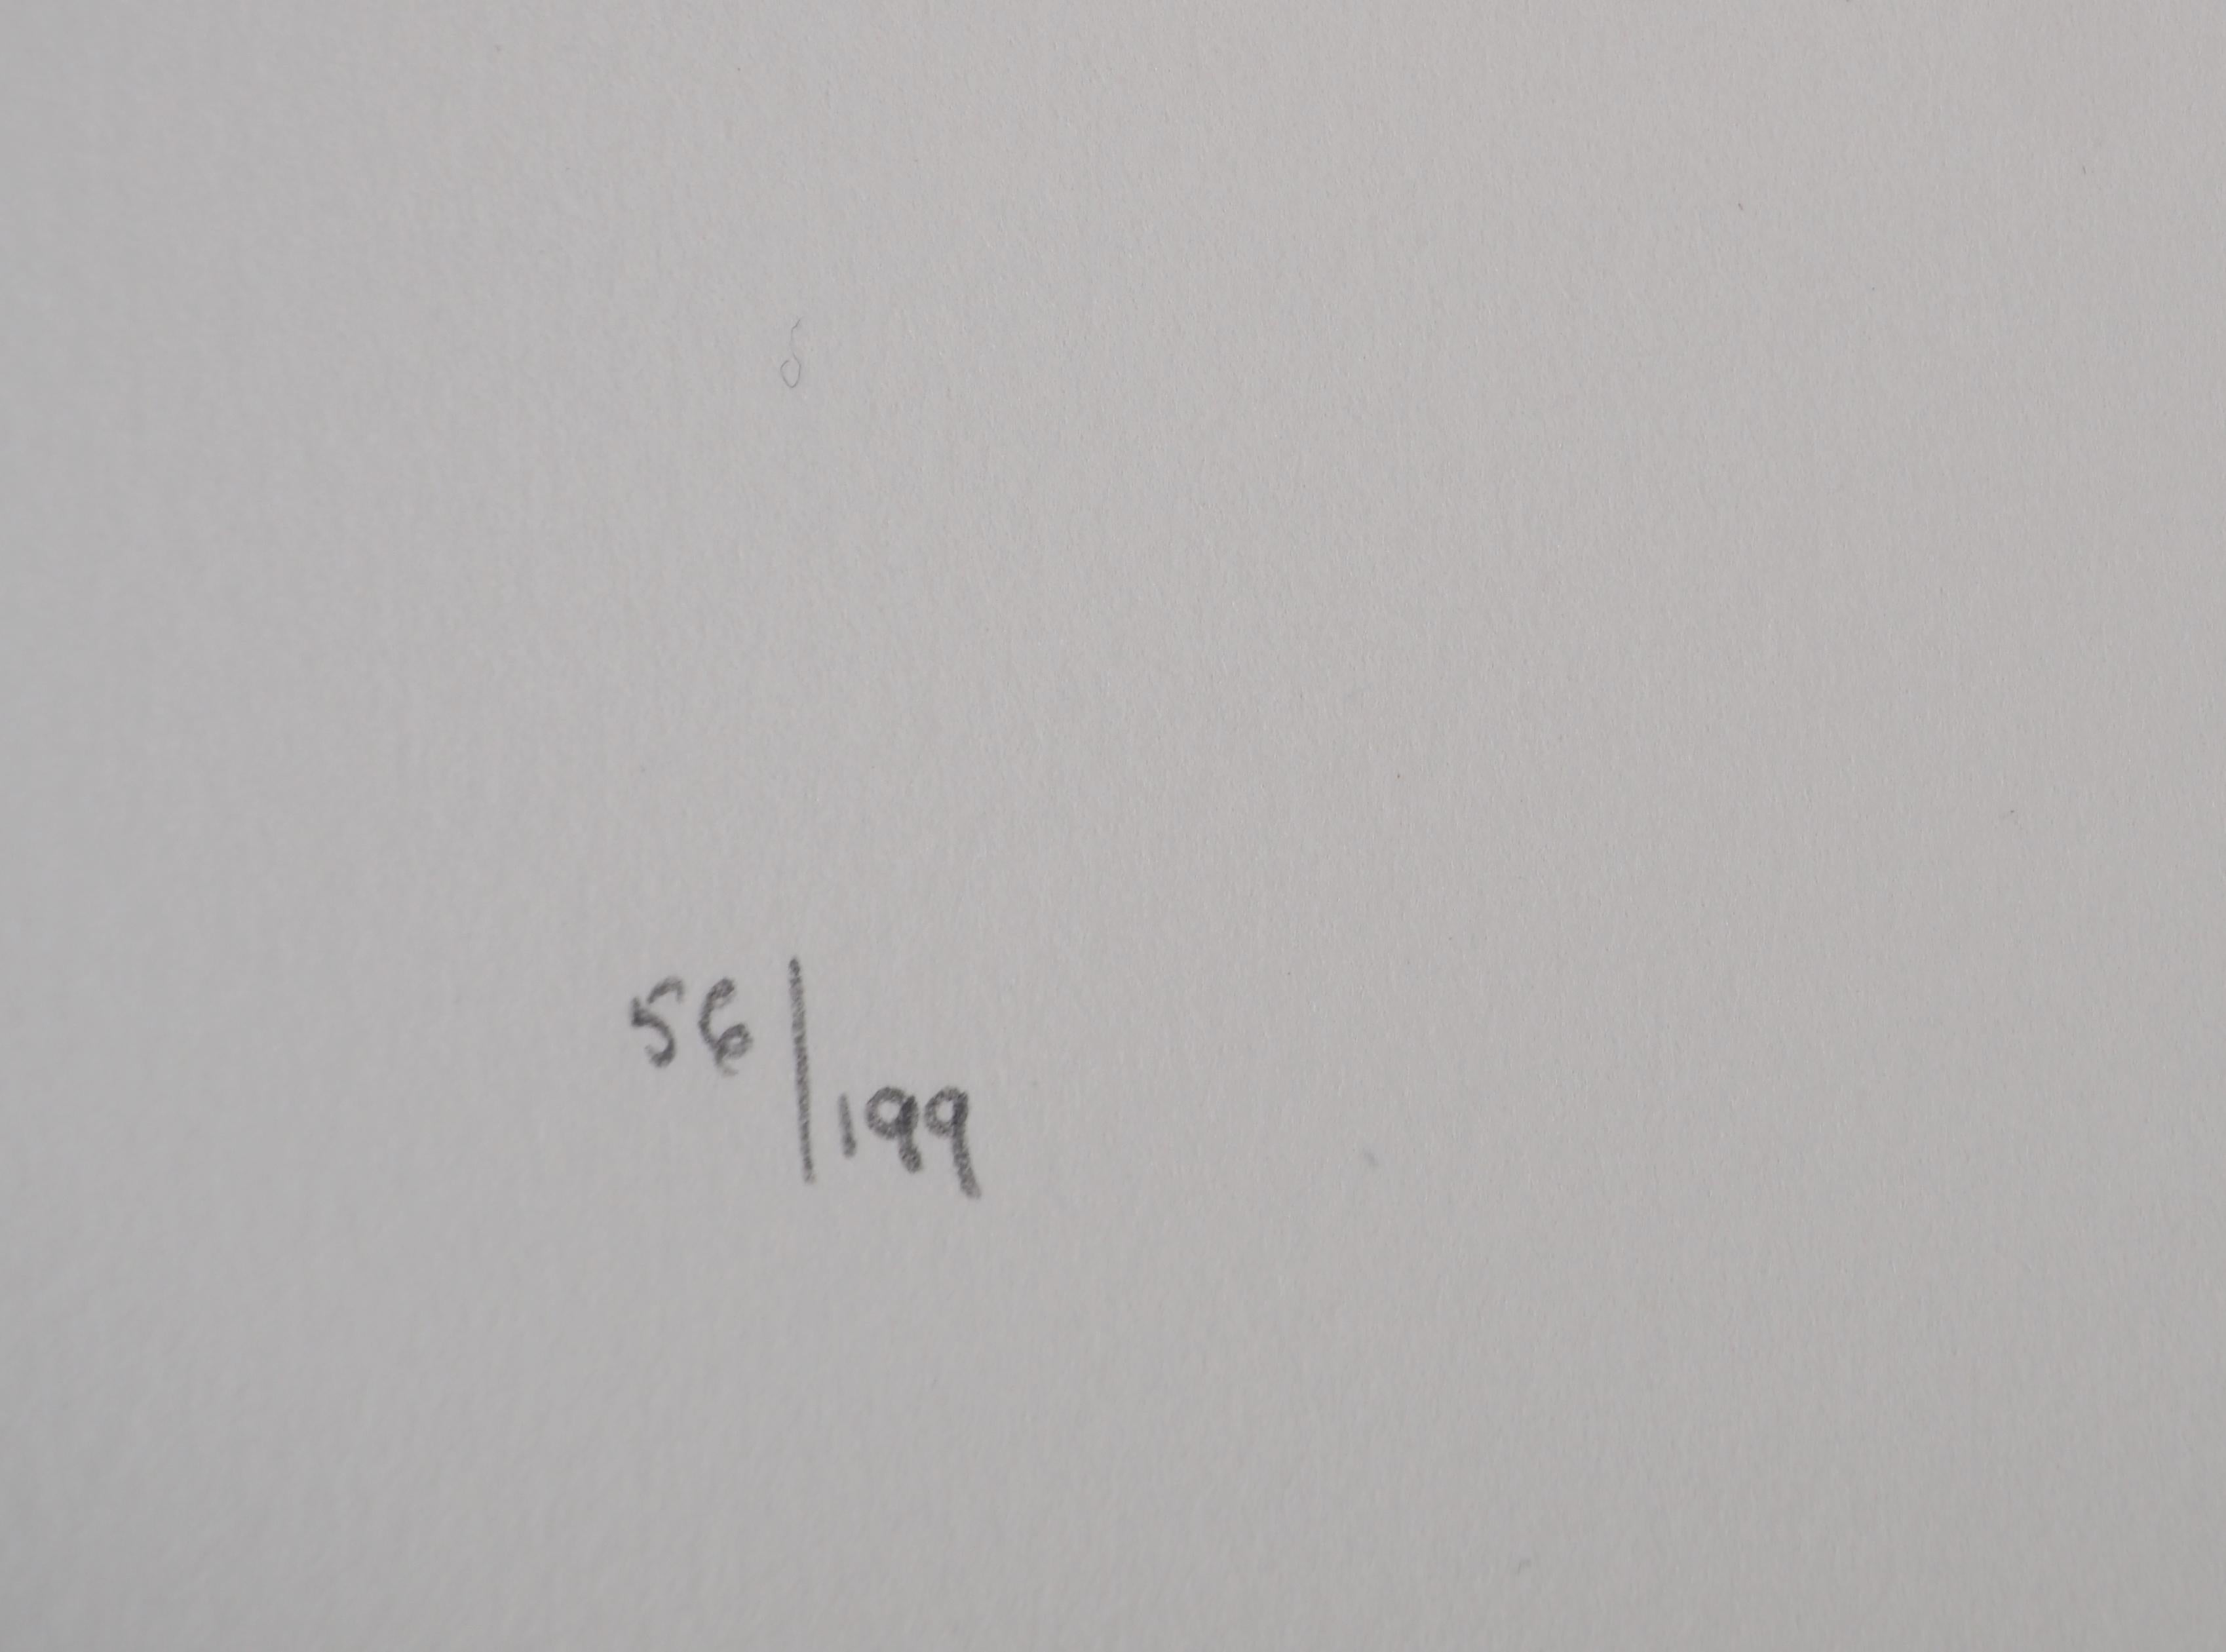 Jules Perahim (1914-2008)
Bonne récolte, 1974

Lithographie originale
Signé au crayon par l'artiste.
Numéroté / 199
Sur vellum d'Arches 56 x 38 cm (c. 22 x 15 inches)

INFORMATION : Extrait du portfolio 